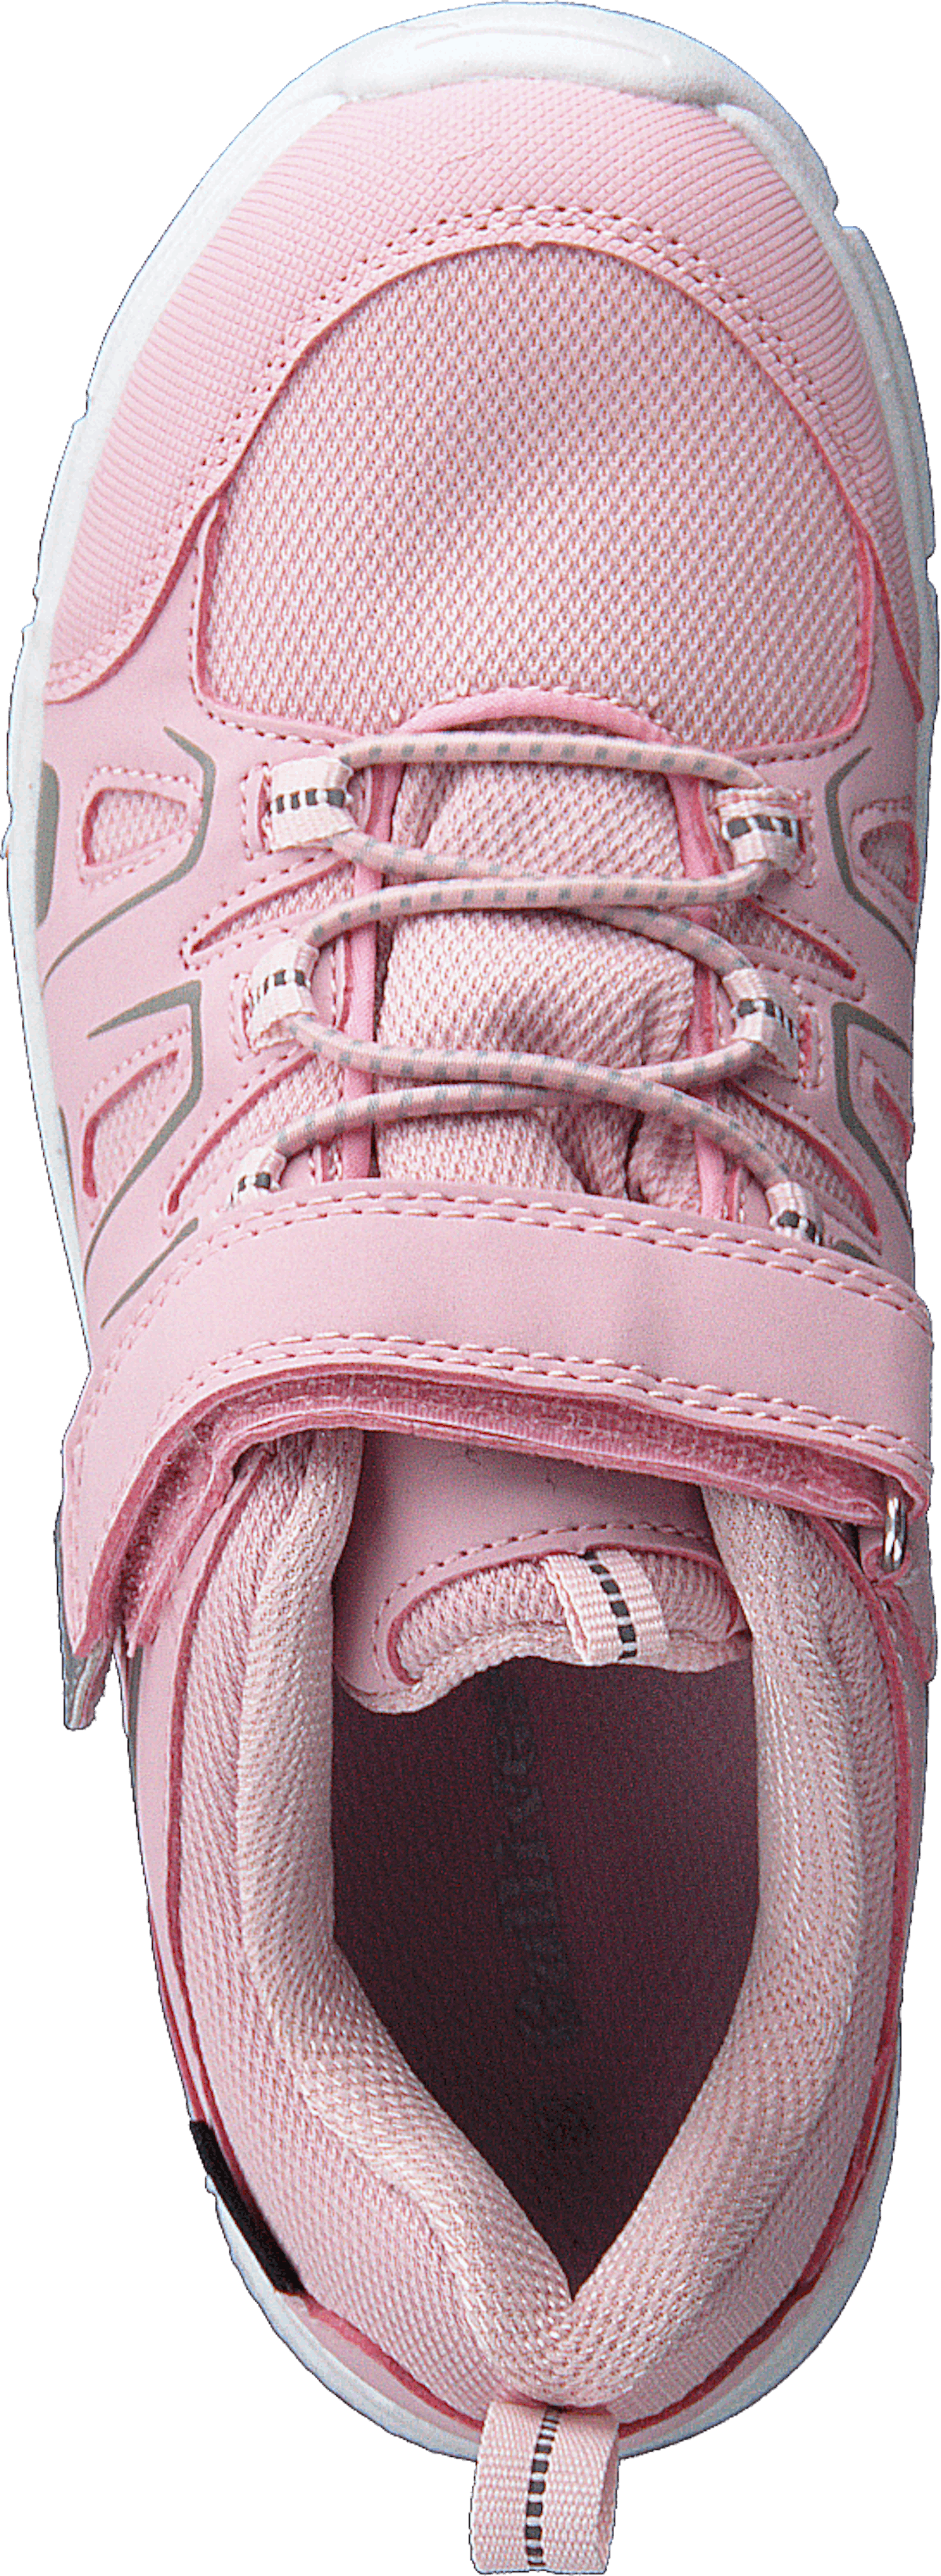 4350107-waterproof Pink